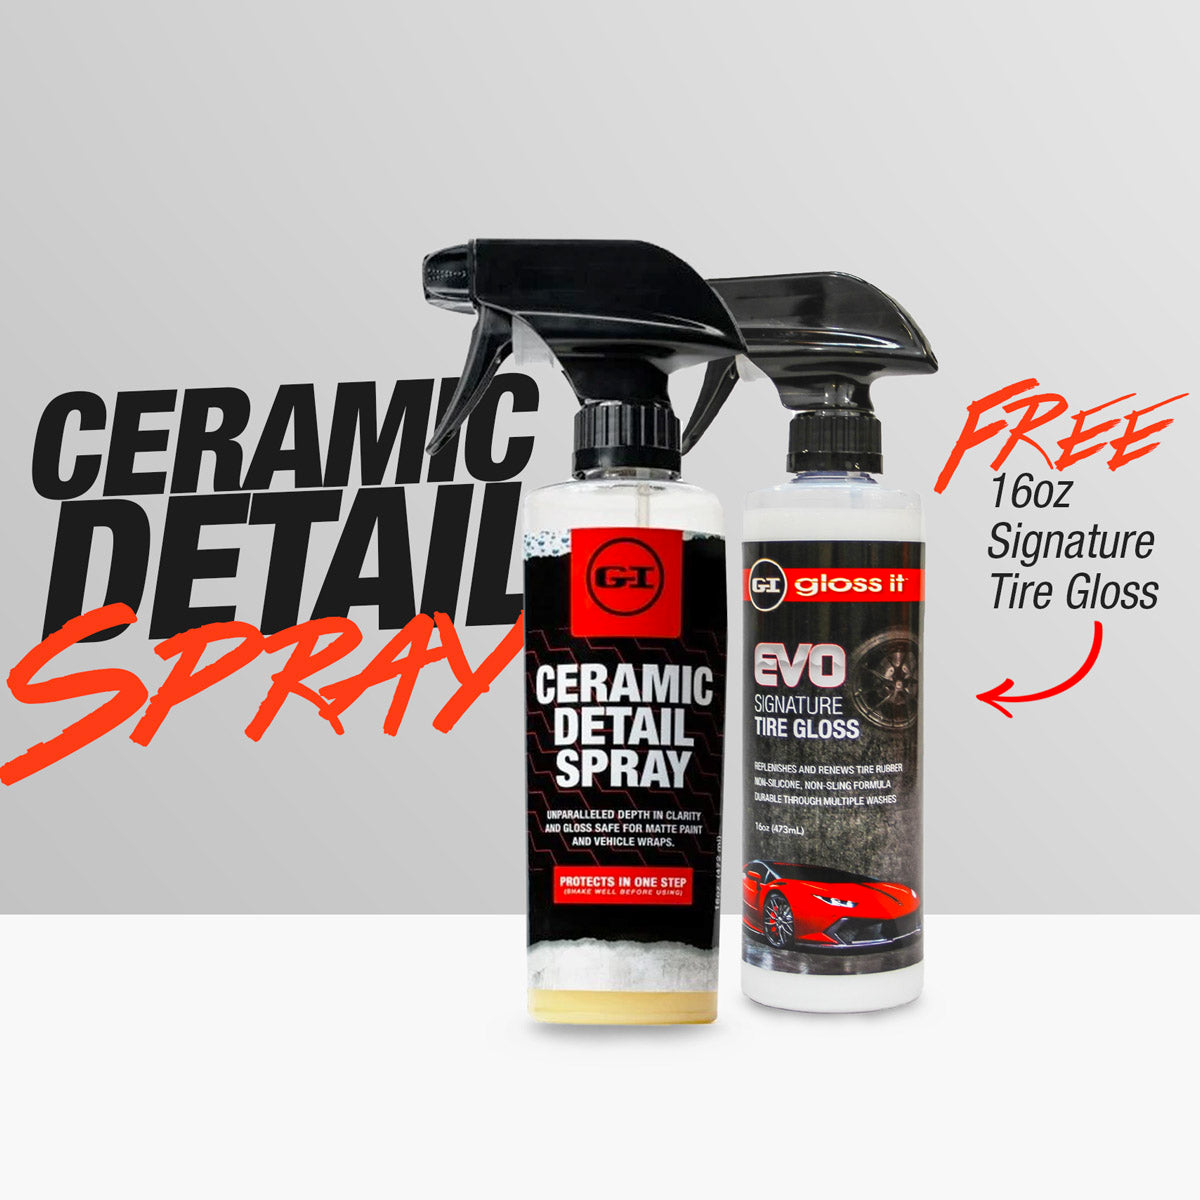 Ceramic Detail Spray + FREE 1 Tire Gloss